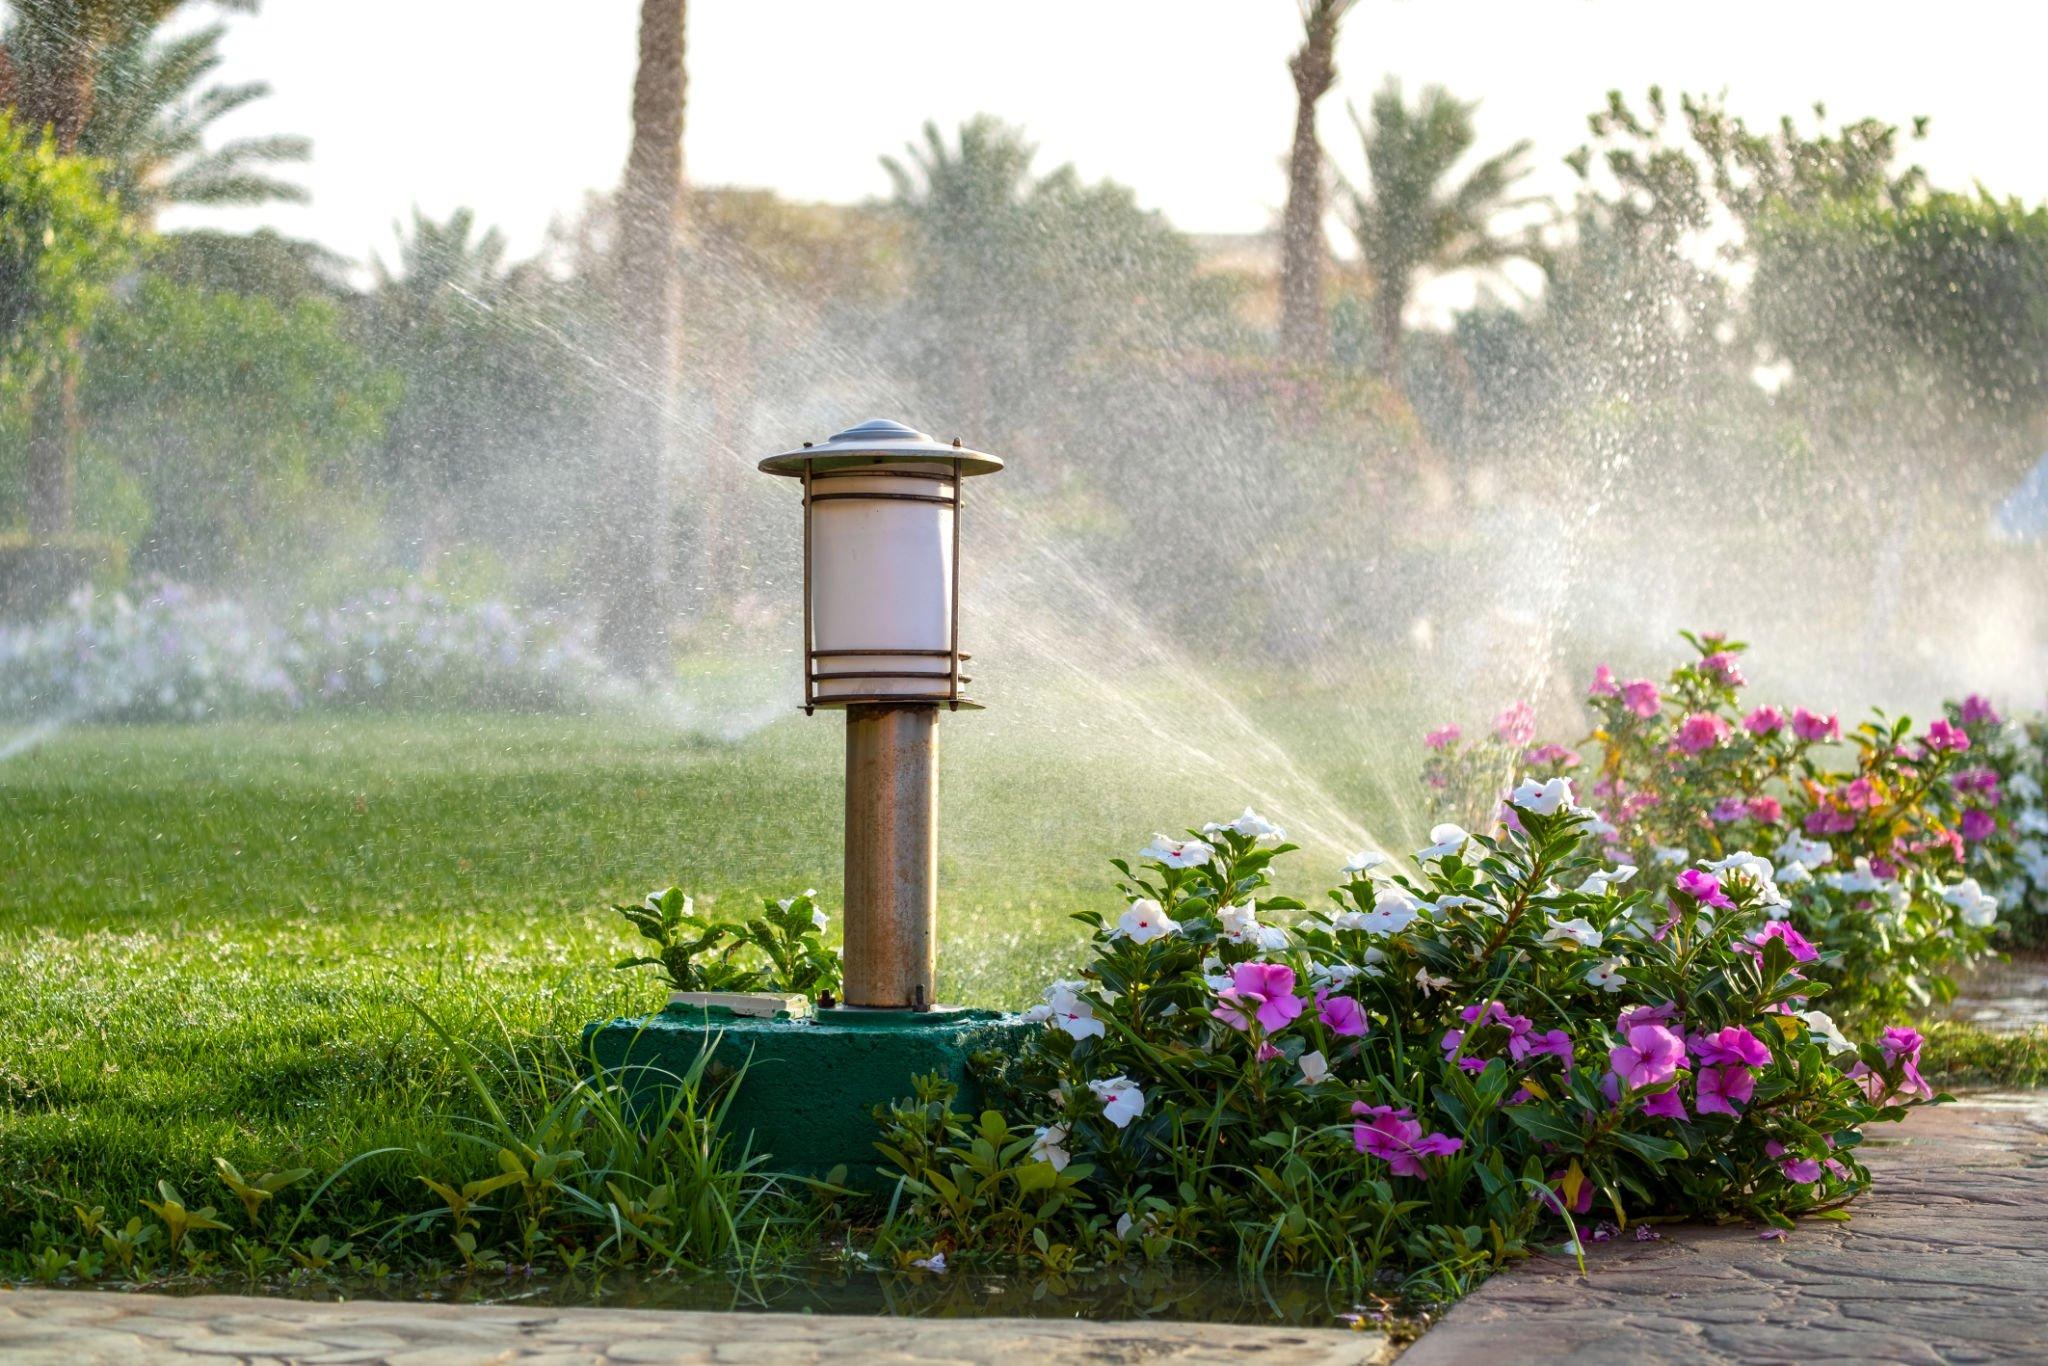 Sprinkler System Coverage Optimization